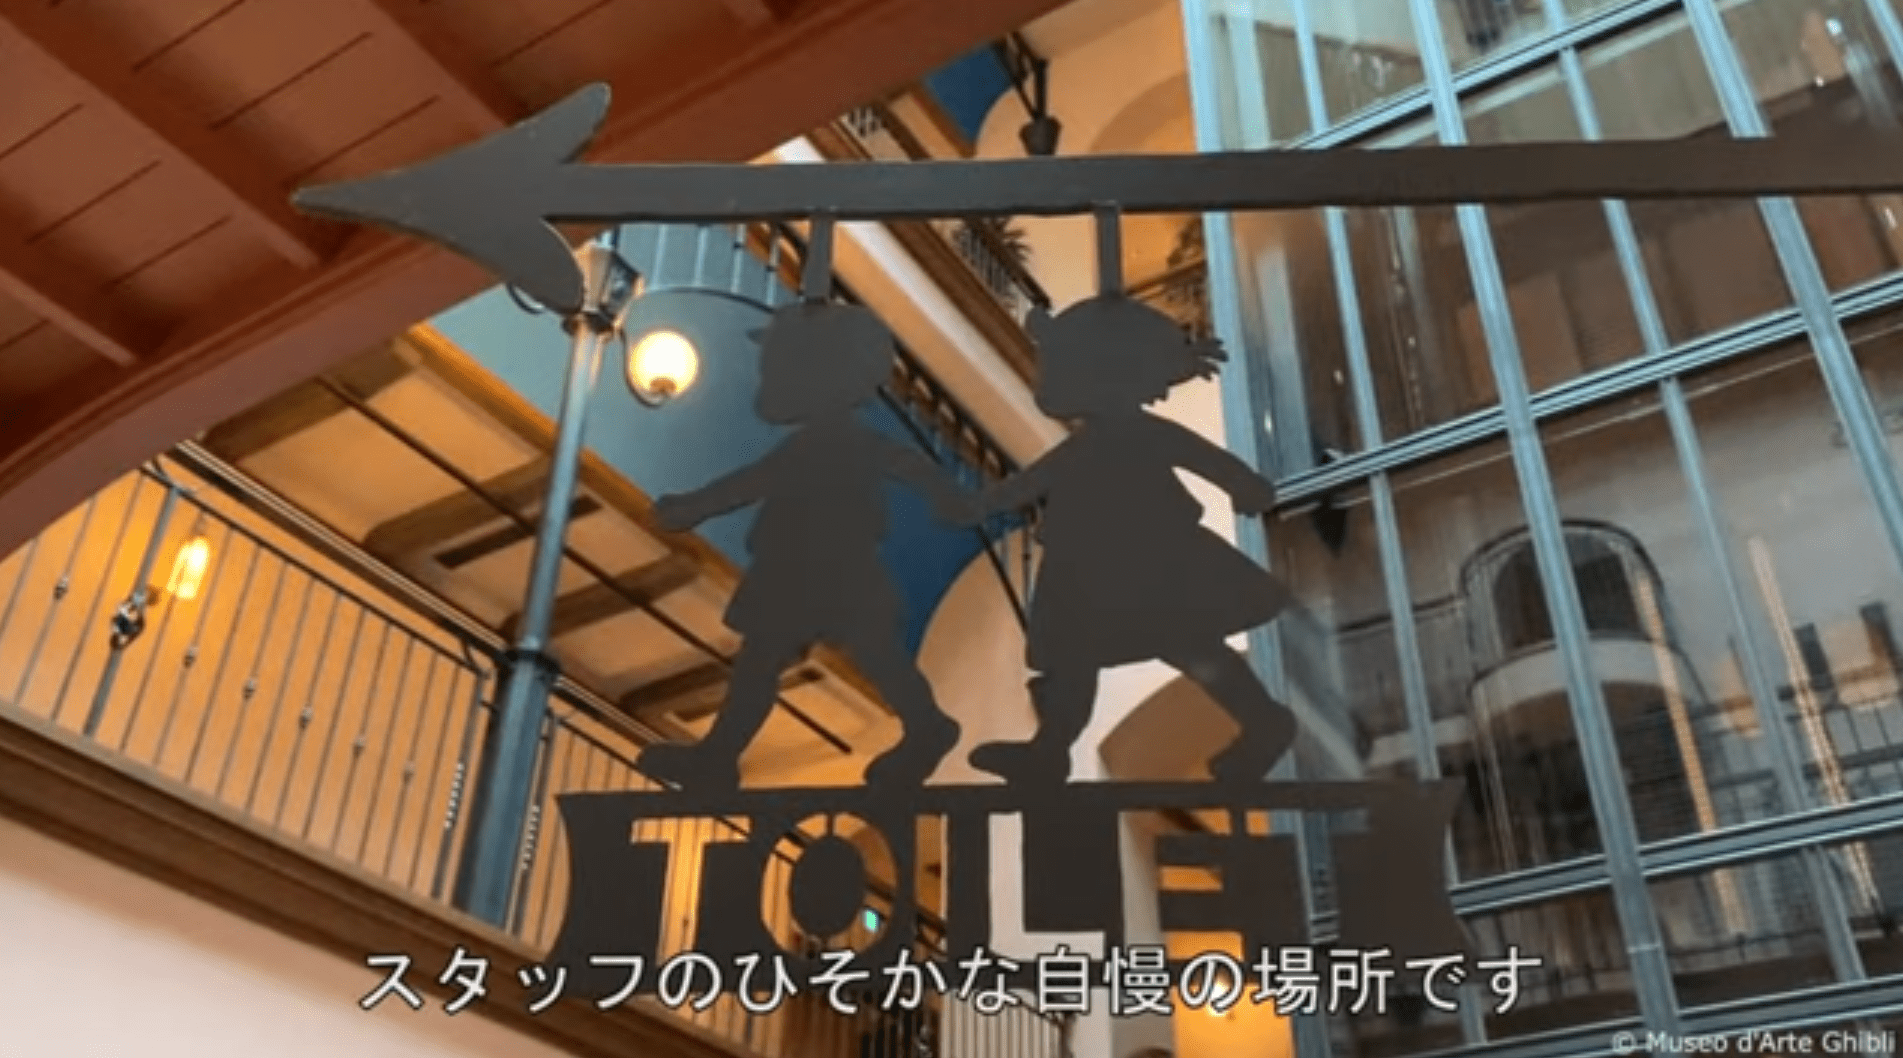 Visita virtual ao Museu Ghibli revela o que há dentro dos banheiros femininos